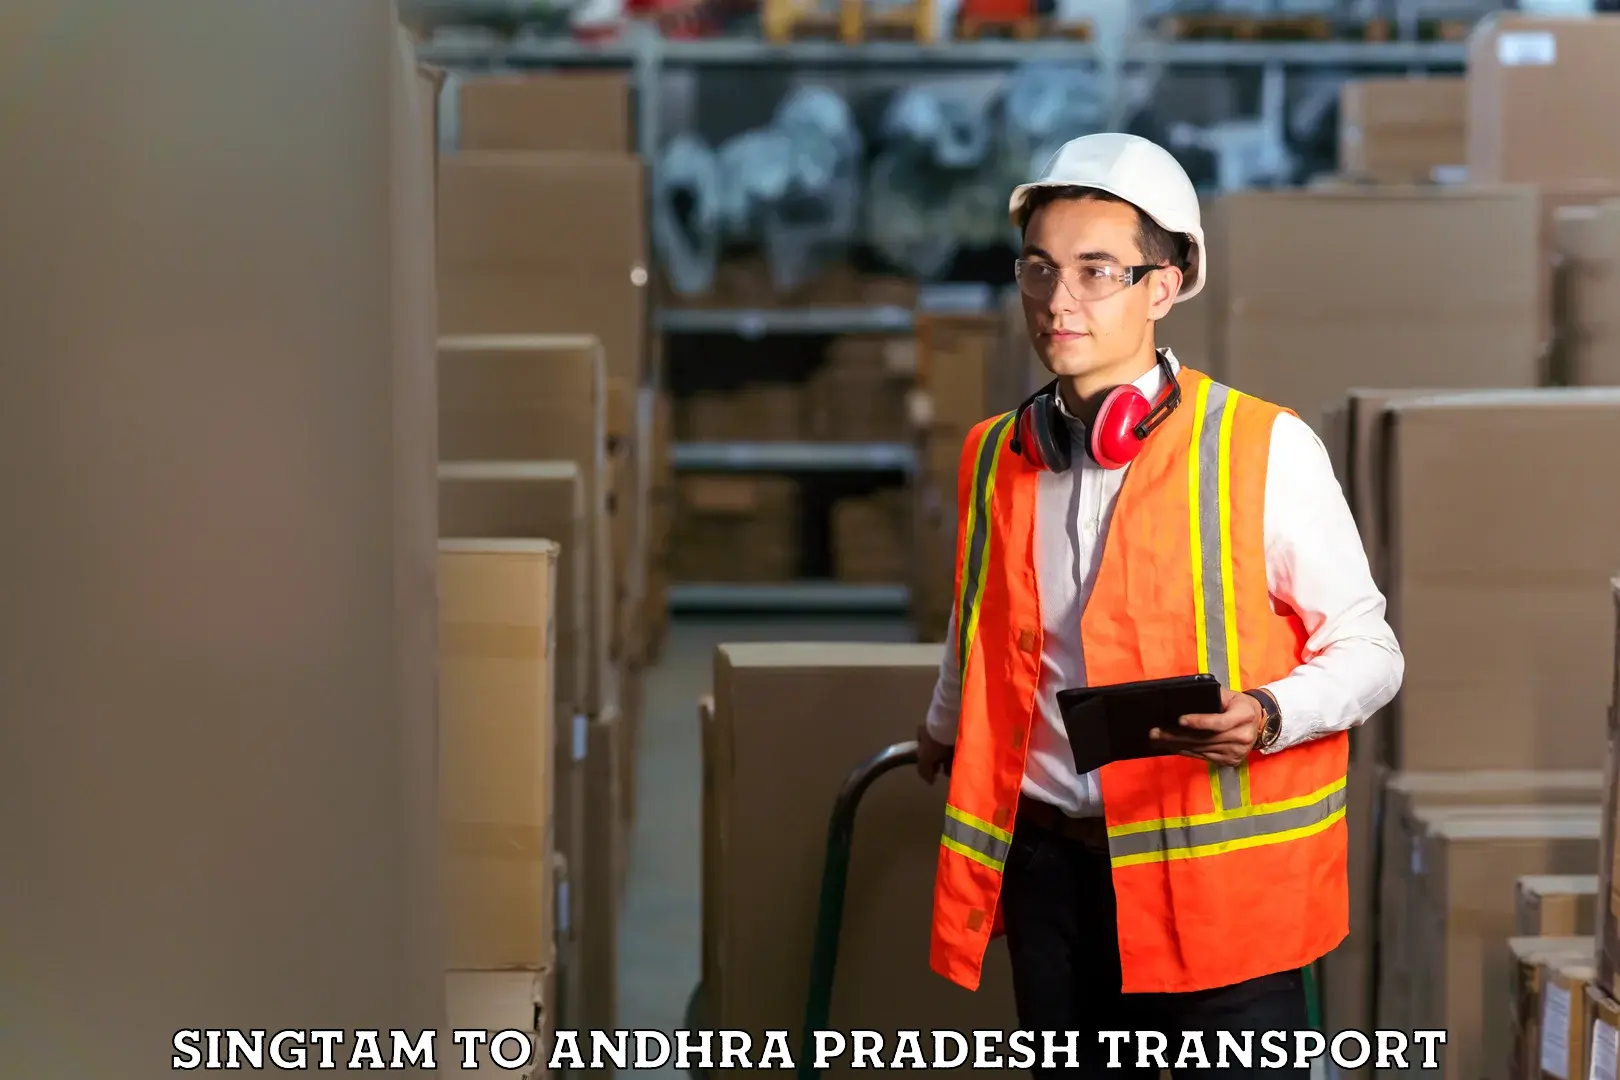 Transport in sharing Singtam to NIT Andhra Pradesh